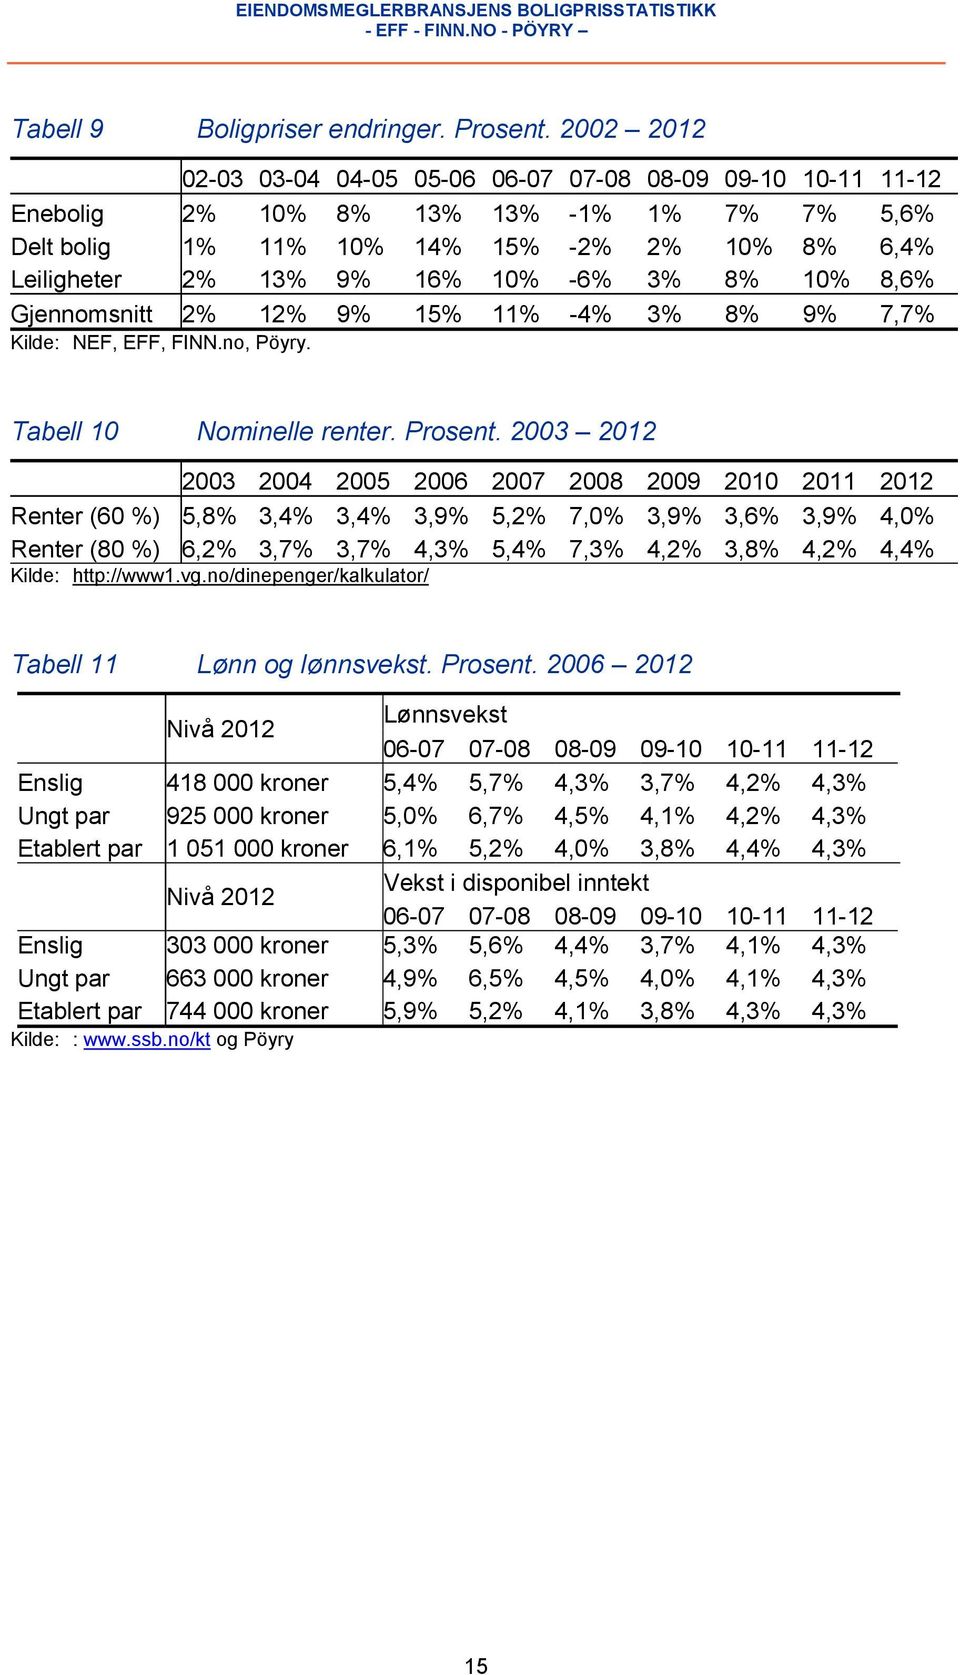 3% 8% 10% 8,6% Gjennomsnitt 2% 12% 9% 15% 11% -4% 3% 8% 9% 7,7% Kilde: NEF, EFF, FINN.no, Pöyry. Note: Tallene i 2011 gjelder tom. fjerde kvartal. Tabell 10 Nominelle renter. Prosent.